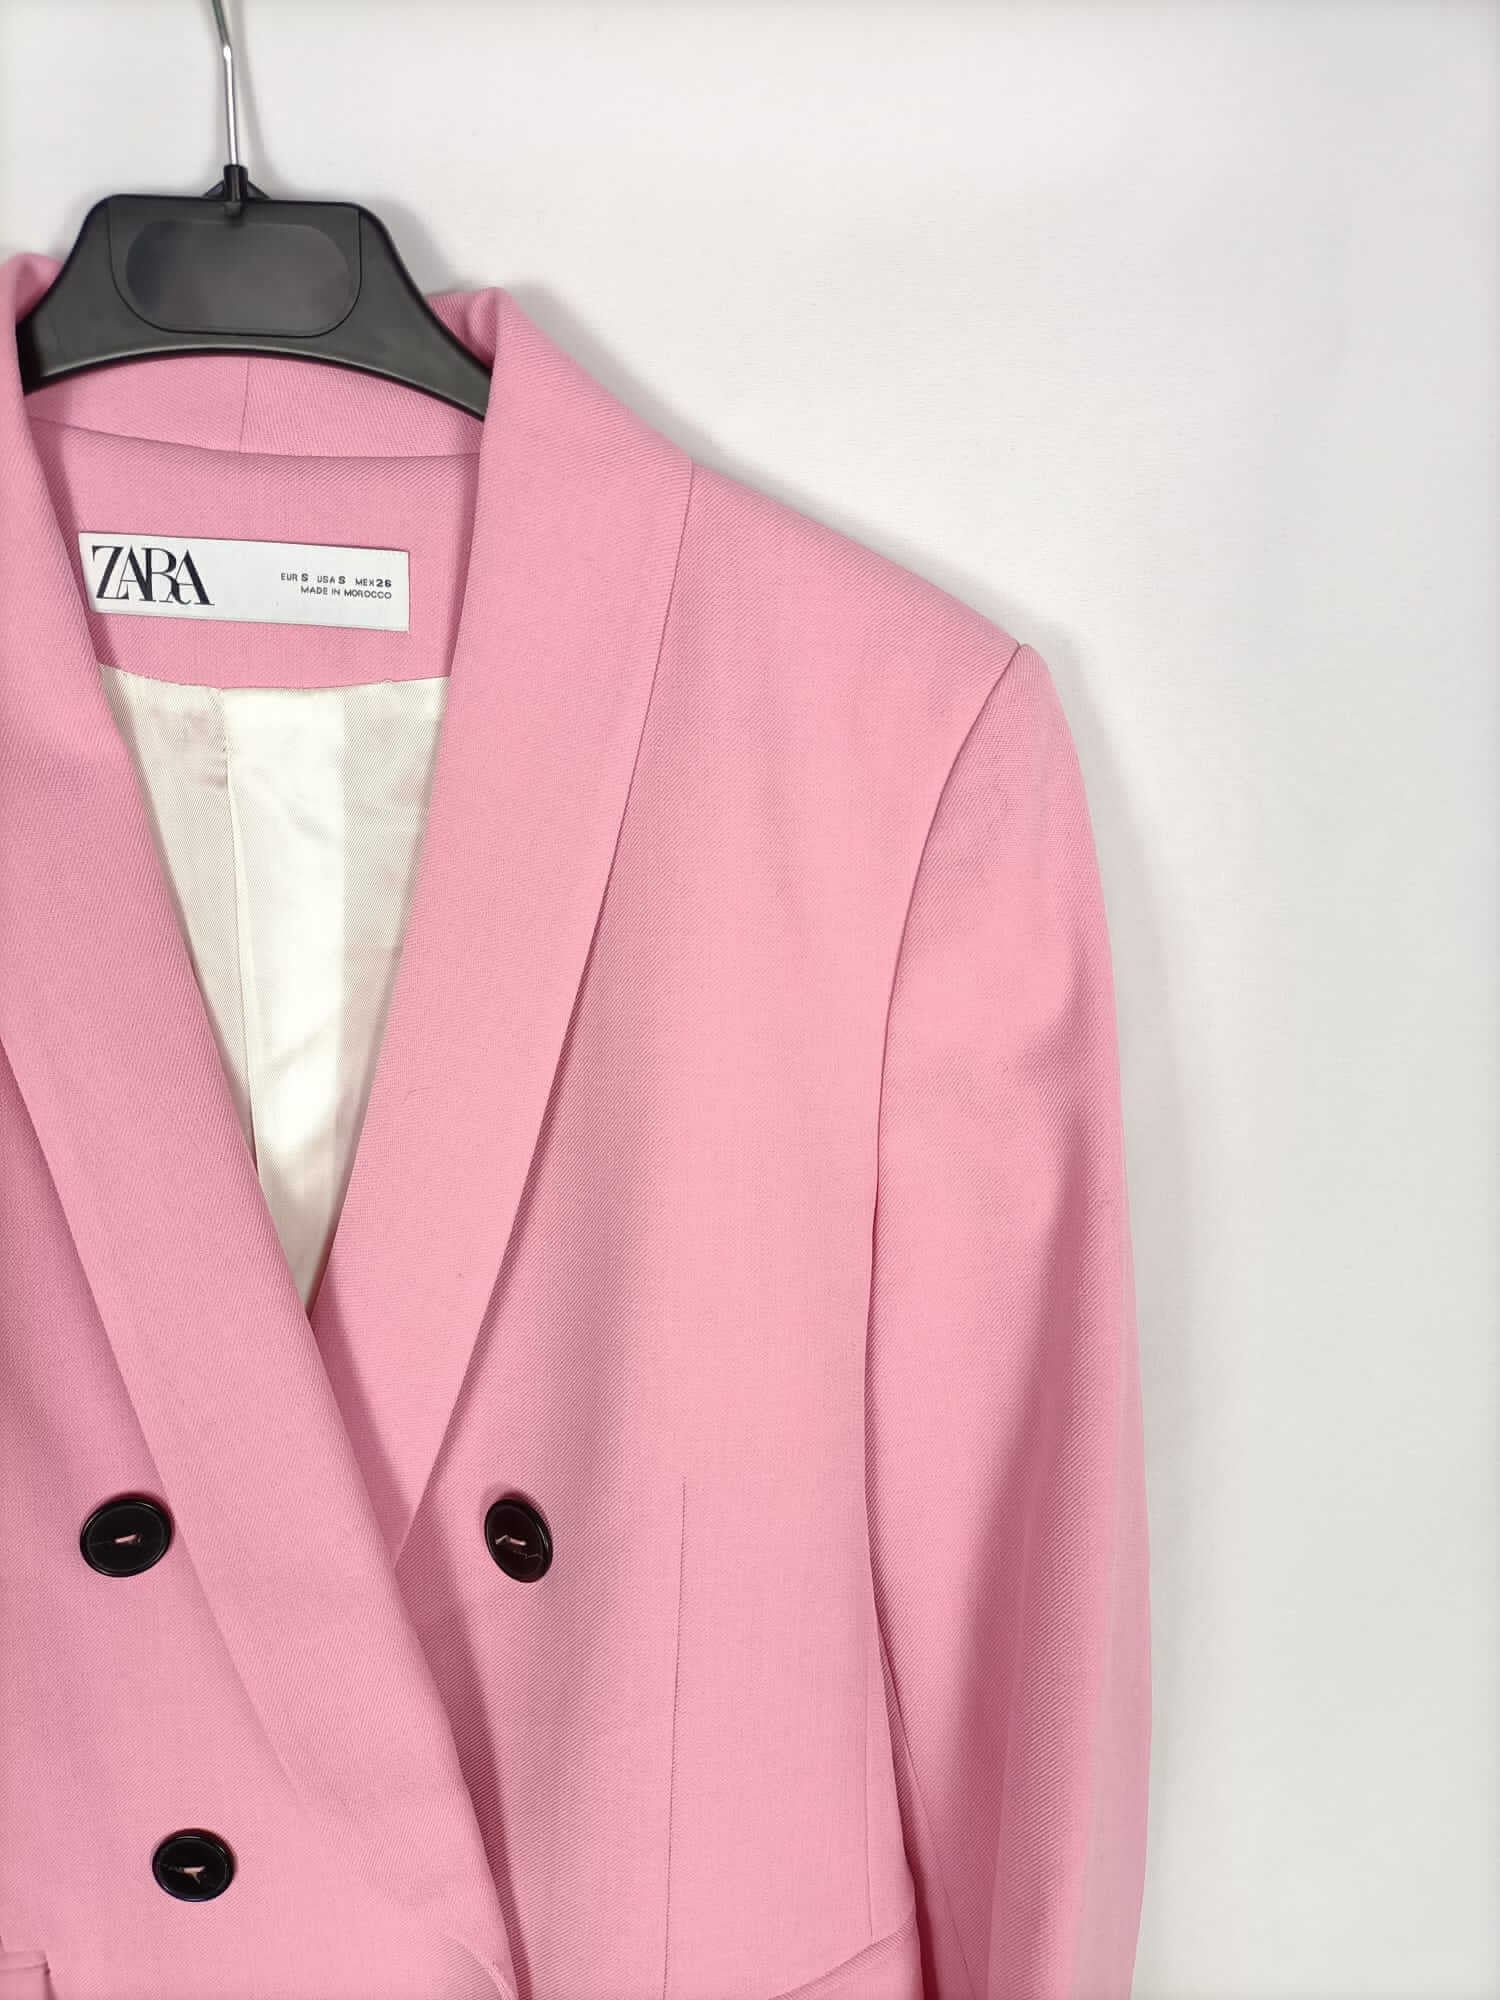 ZARA Blazer rosa botões pretos oversized tamanho M - Second Hand / Brecho